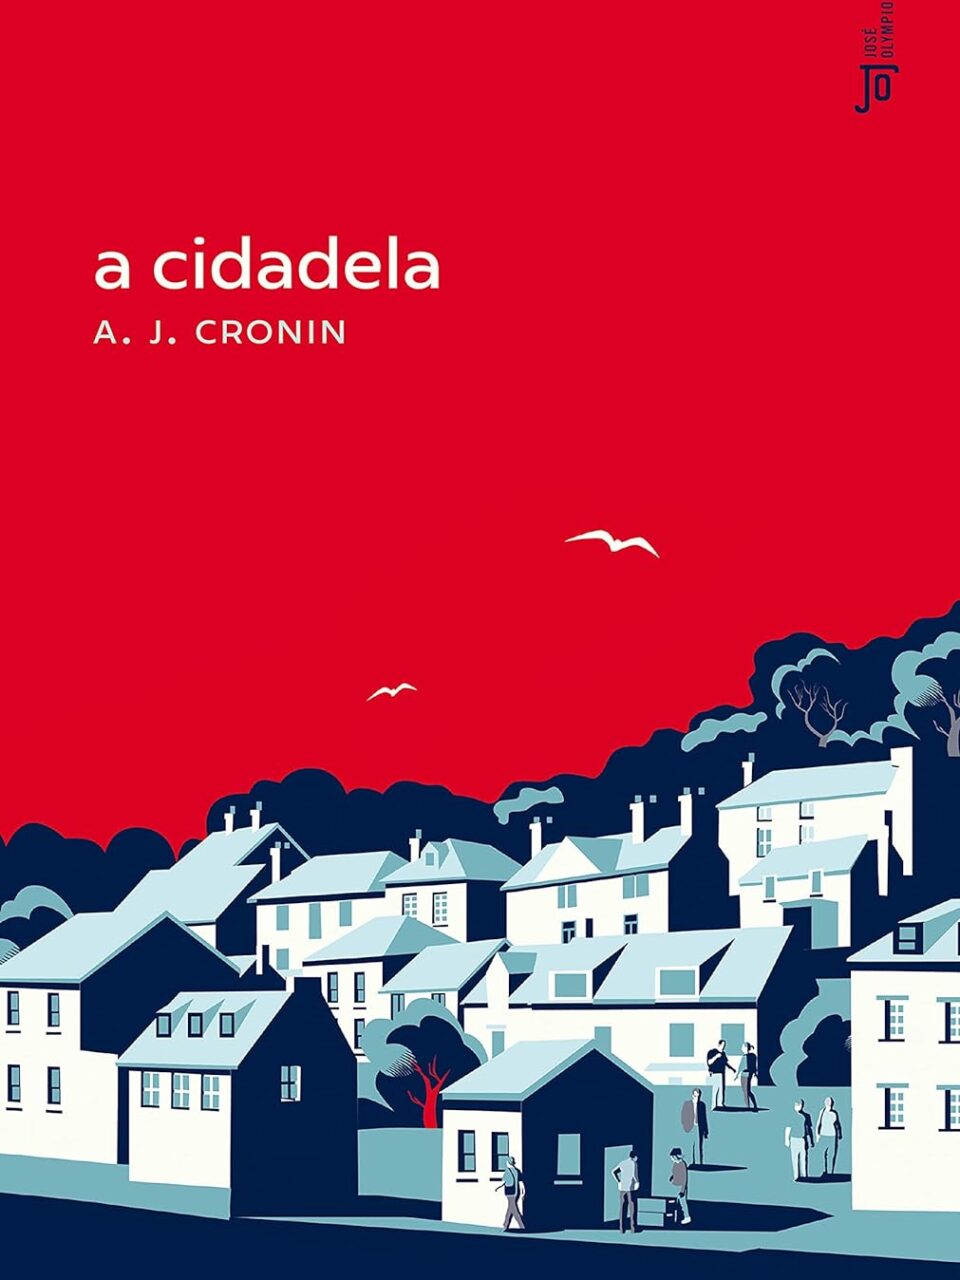 A cidadela - A. J. Cronin